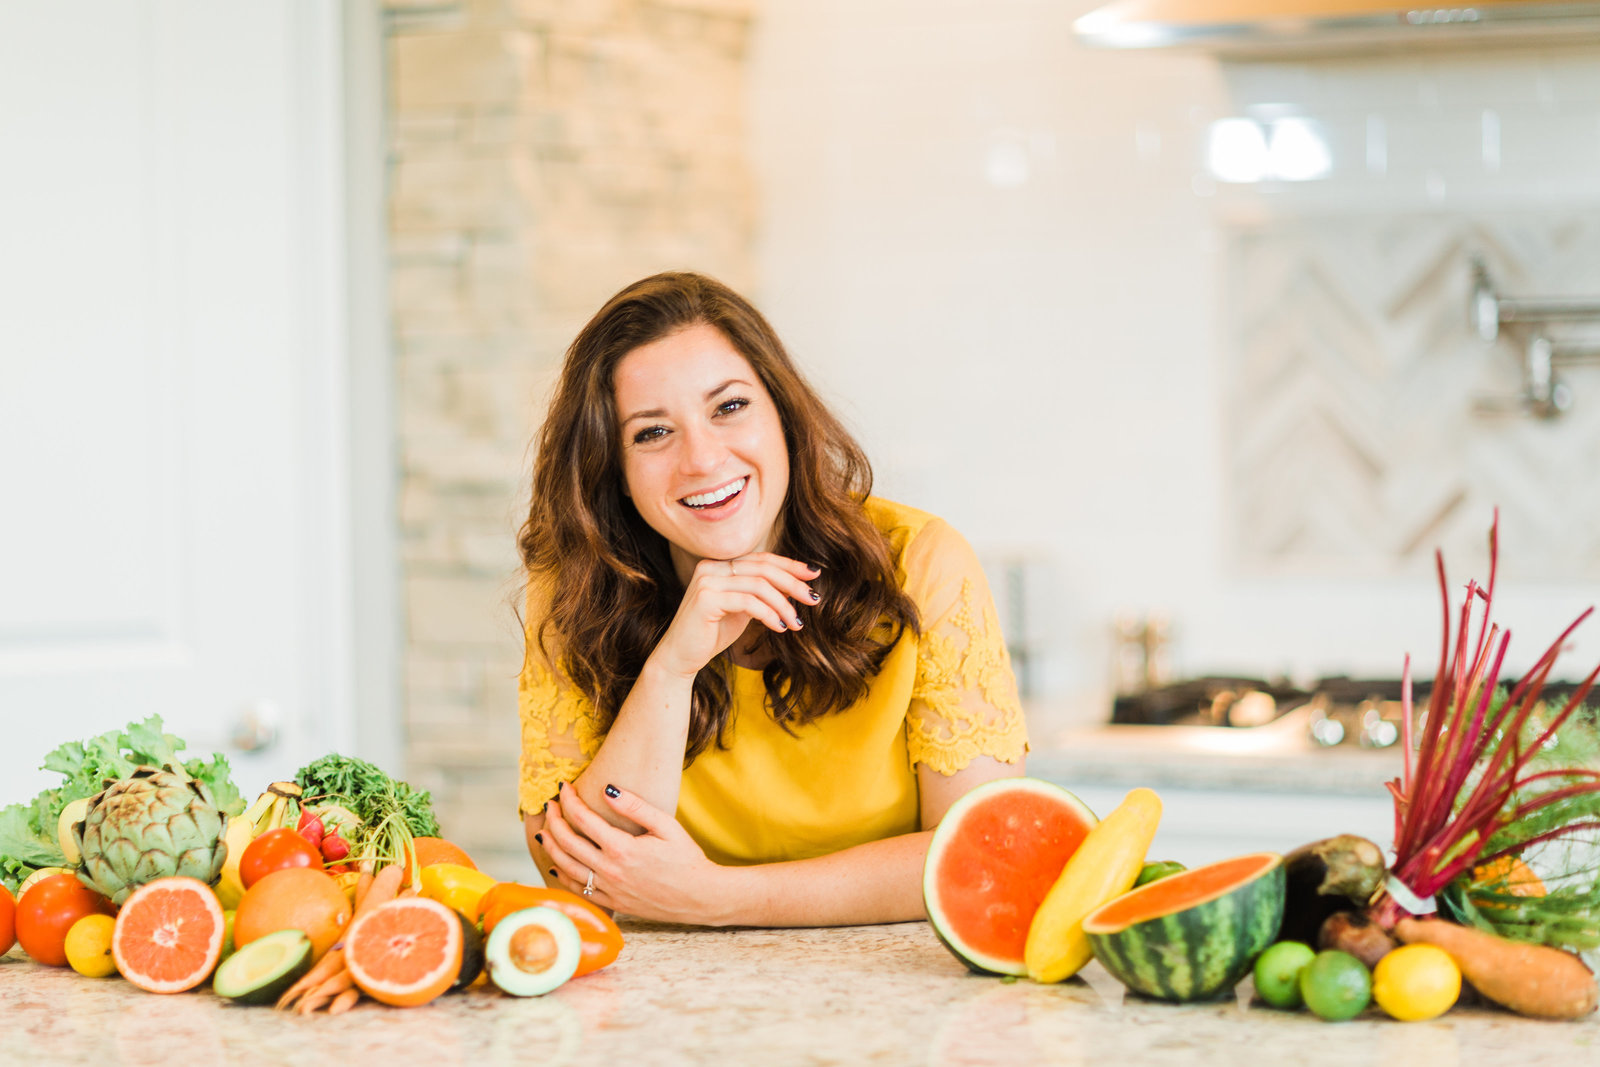 Hi! I am Jen Lyman, owner of New Leaf Nutrition and RD